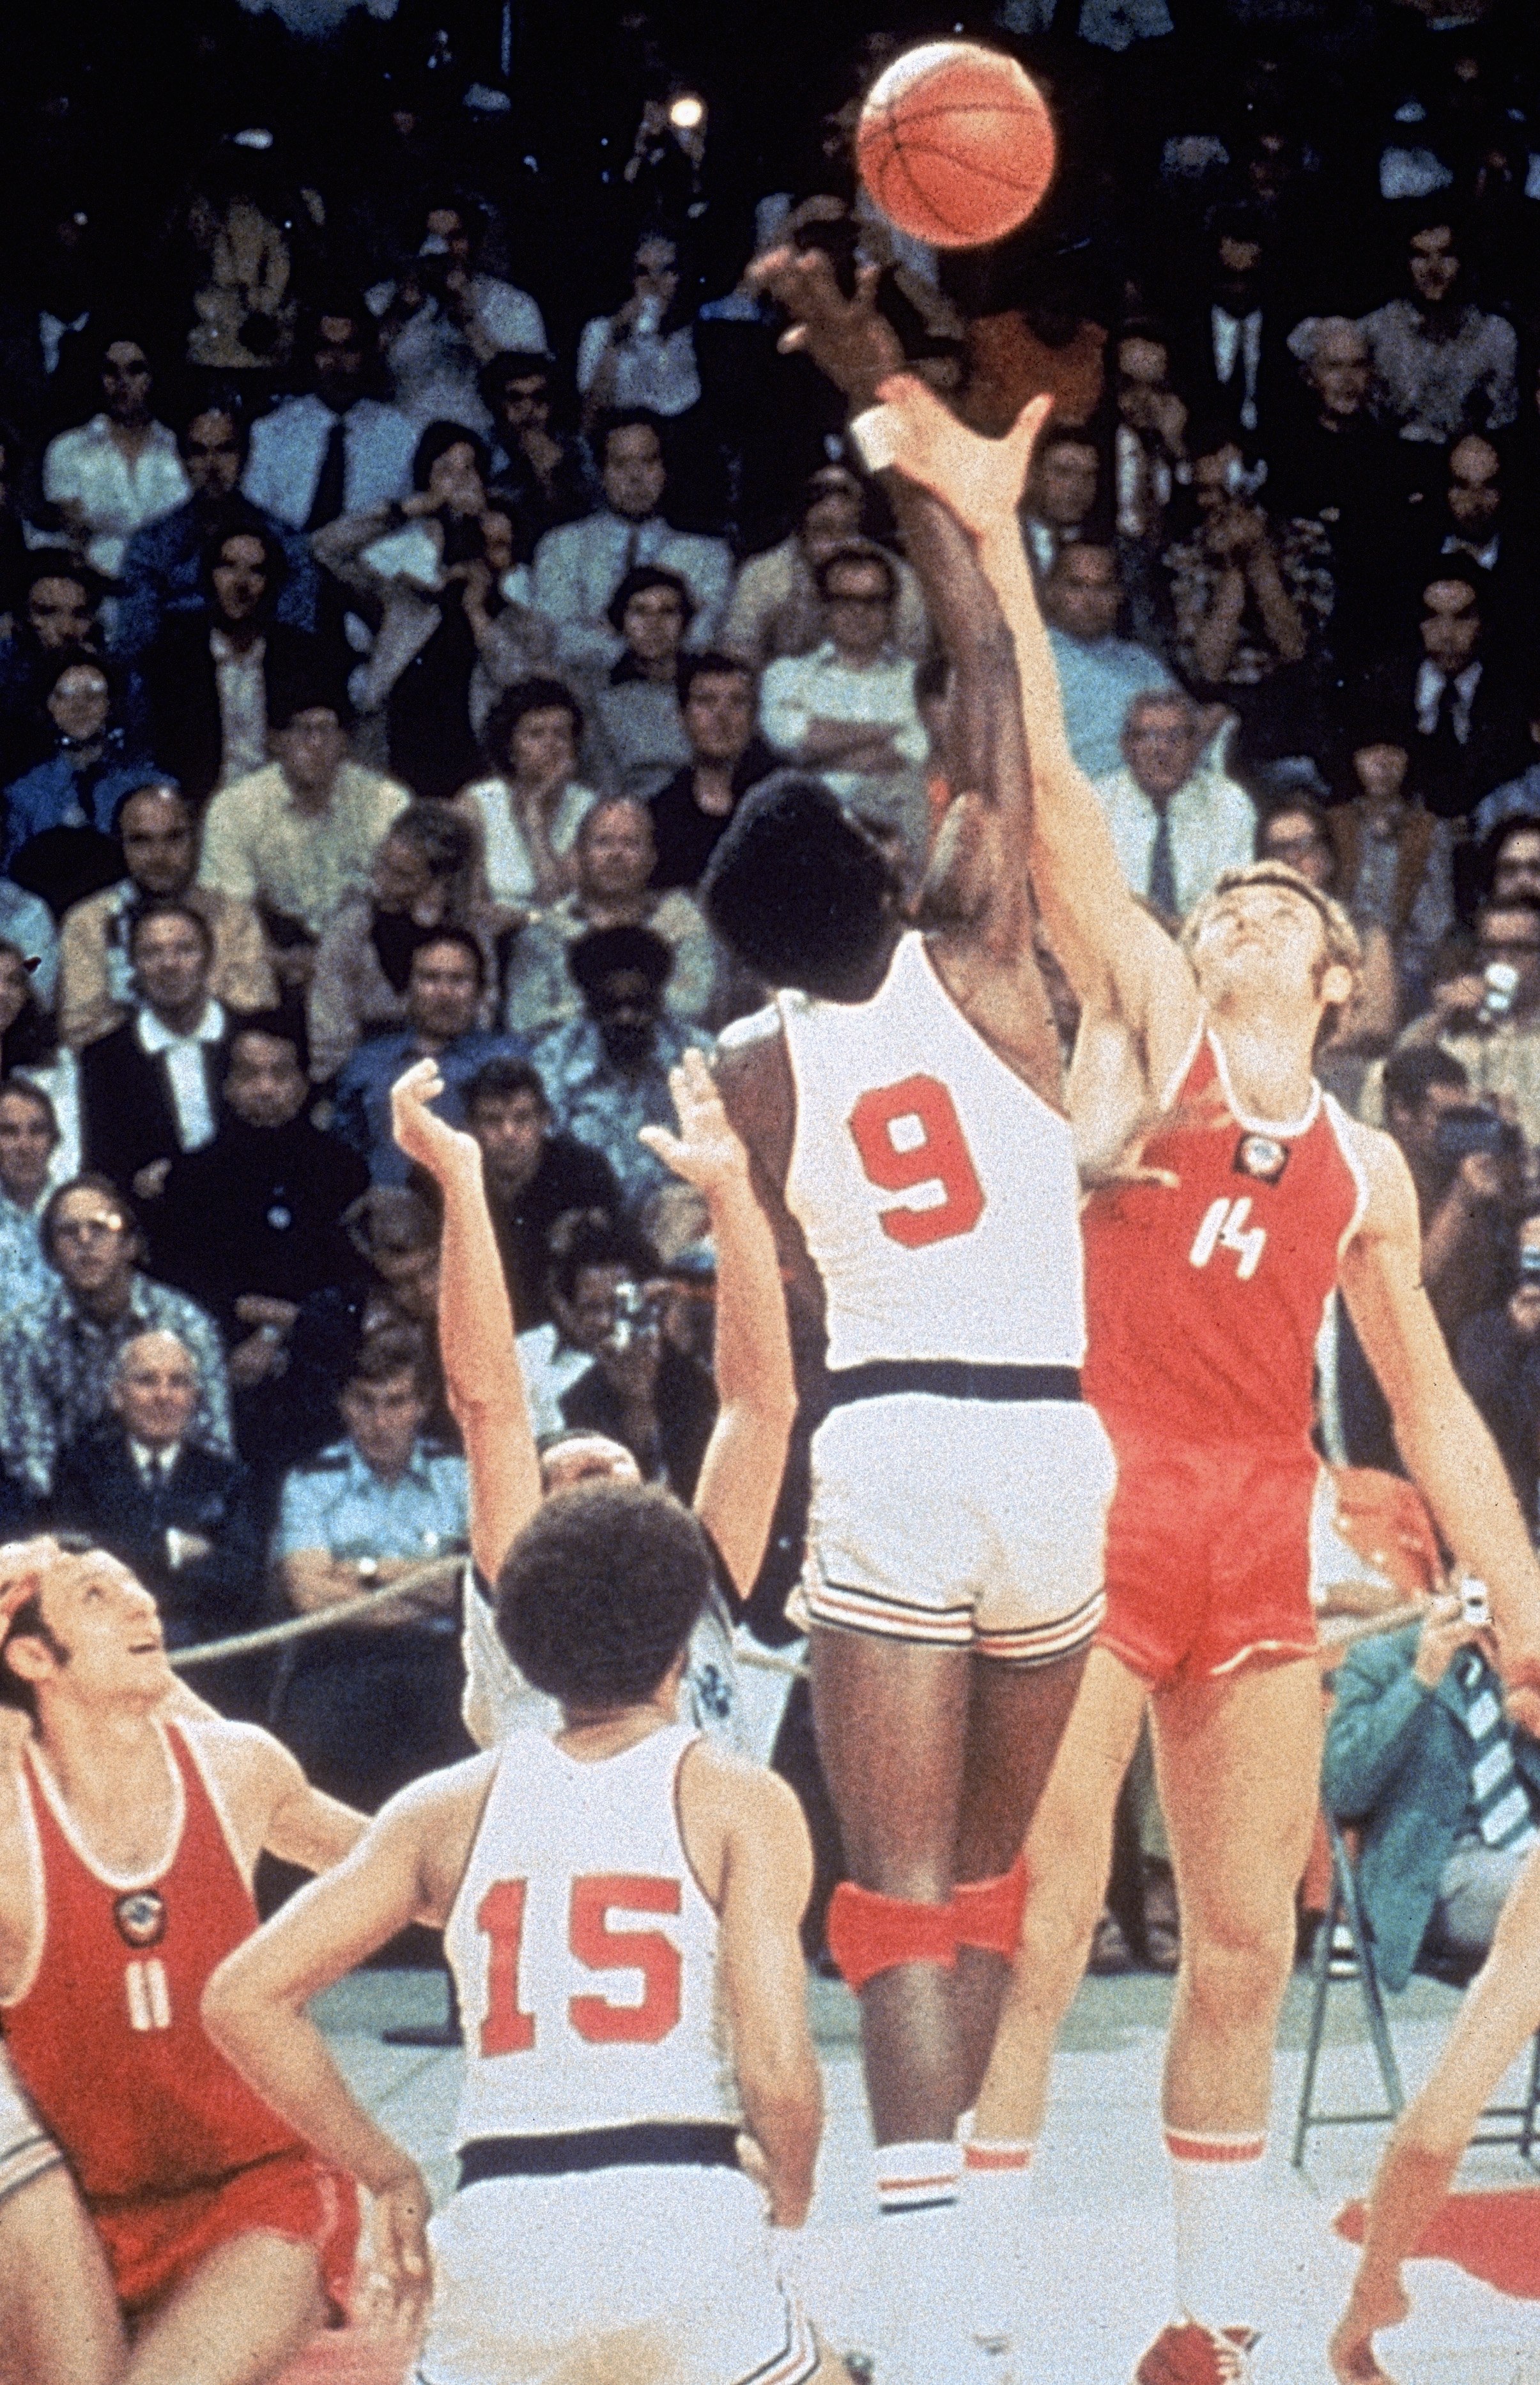 Матч баскетбола 1972. Мюнхен 1972 баскетбол. СССР-США баскетбол 1972. Баскетбол Мюнхен 1972 СССР США. 1972 Баскетбольный матч СССР США.